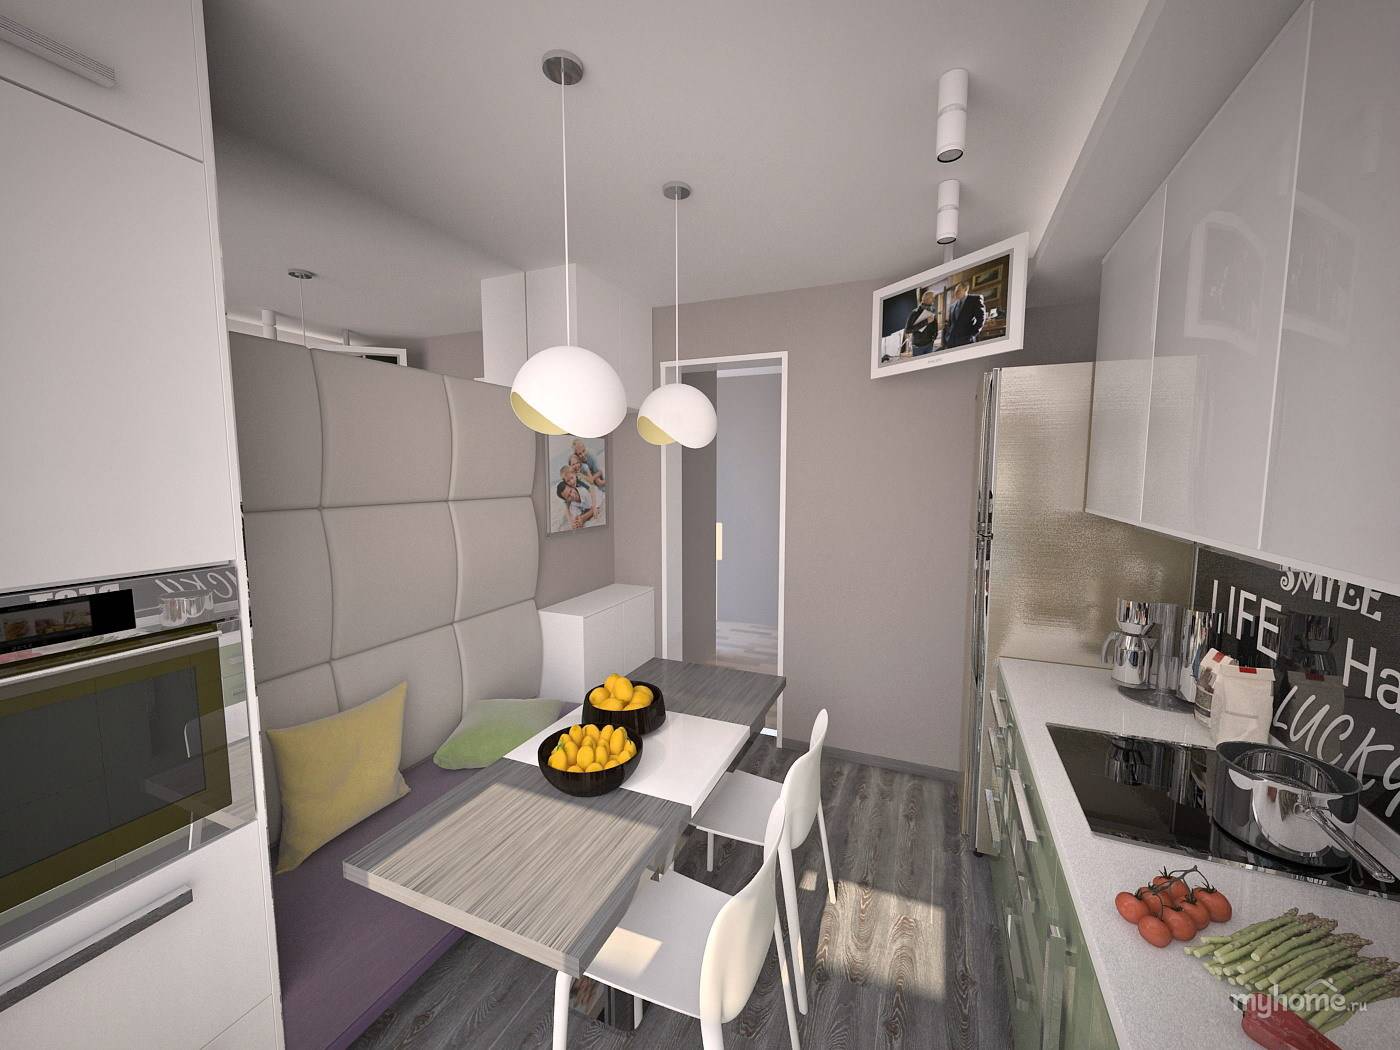 Планировка и дизайн кухни площадью 9 квадратных метров с холодильником